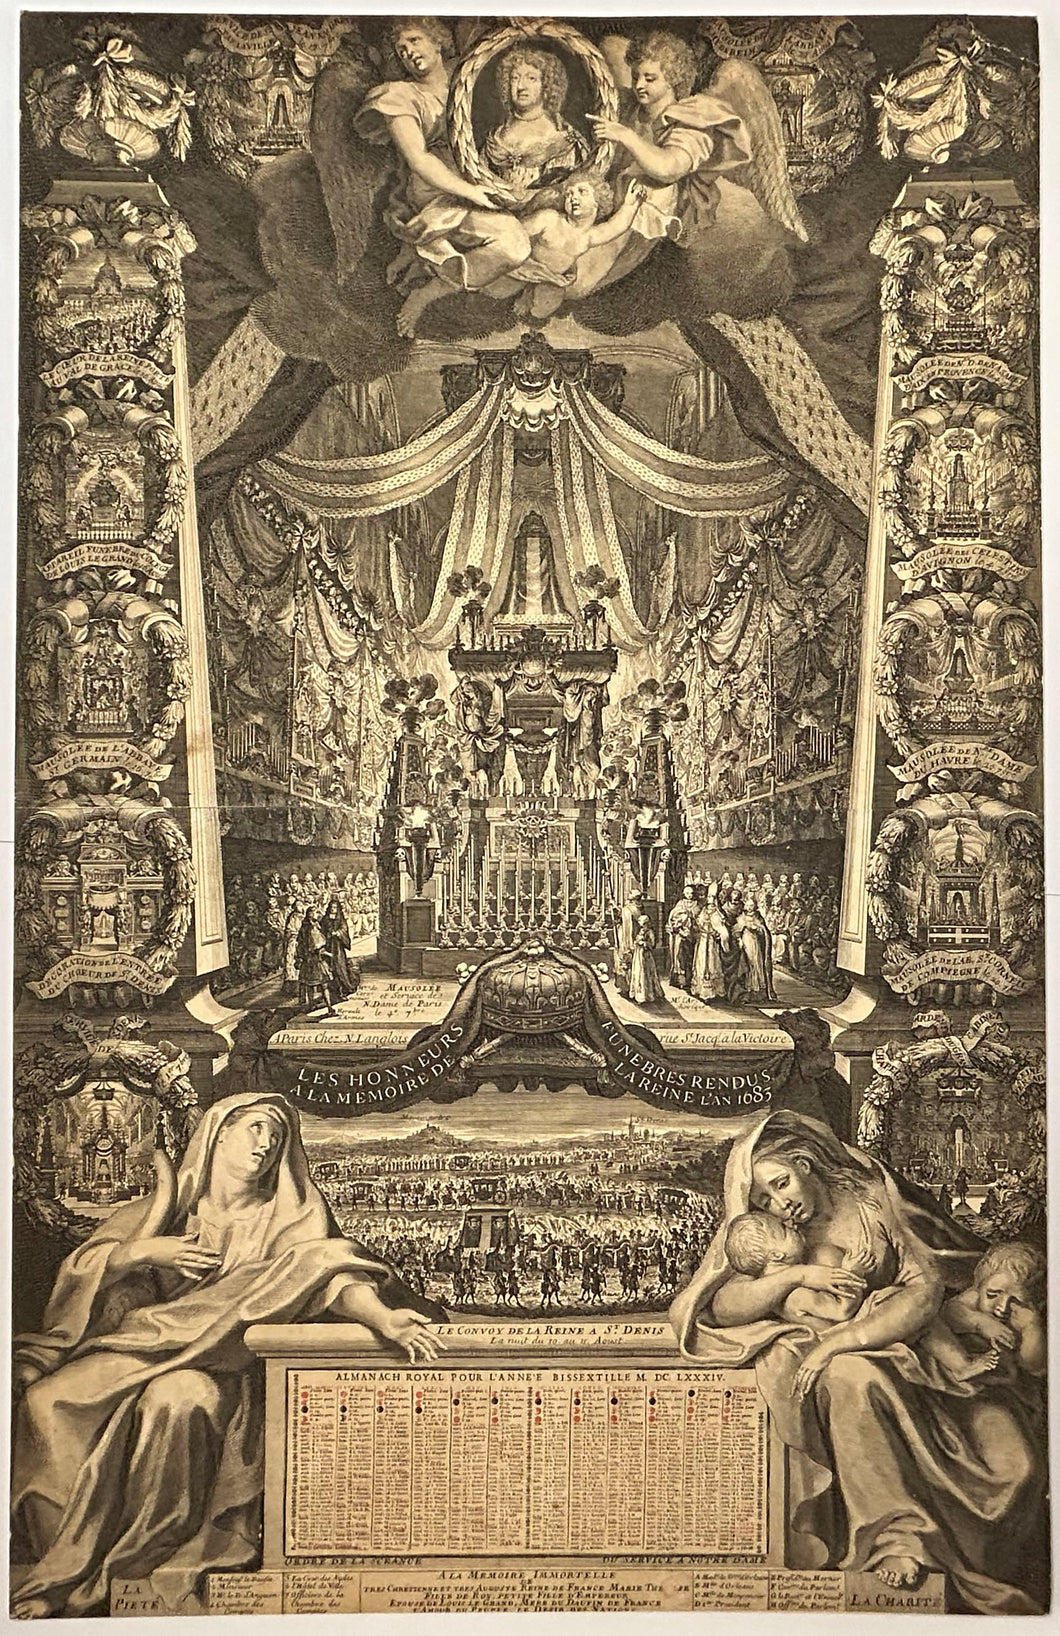 Almanach Royal pour l'année bissextile M.DC.LXXXIV (1684). Les Honneurs funèbres rendus à la Mémoire de la Reine Marie-Thérèse en l'an 1683.